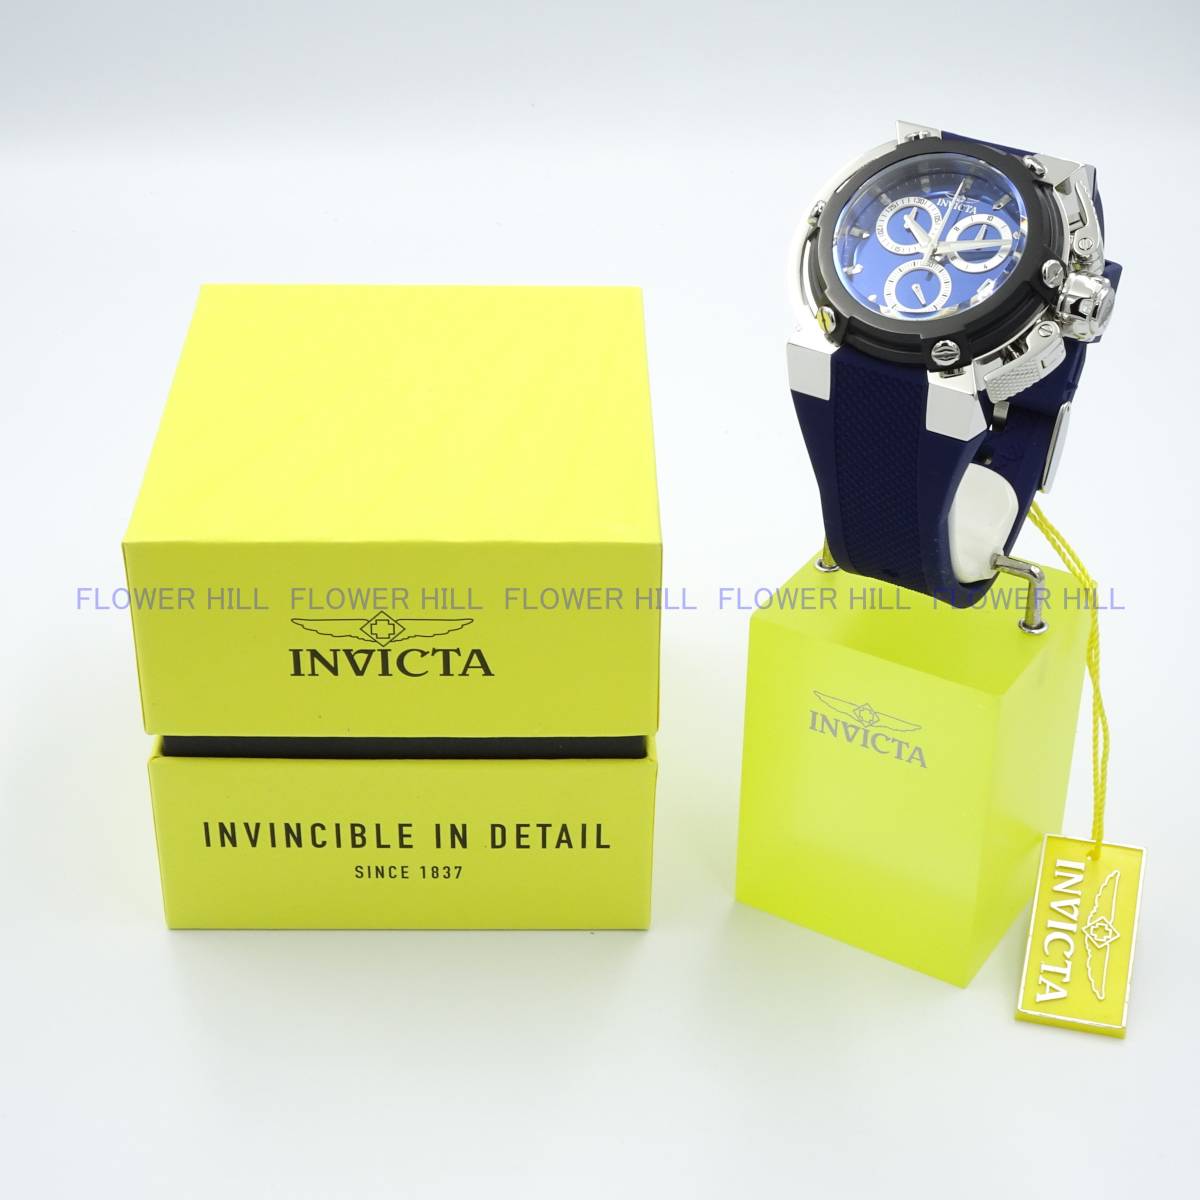 【新品・送料無料】インビクタ INVICTA 腕時計 メンズ クォーツ スイスETA COALITION FORCES X-WING 45330 ブルー シリコンバンド